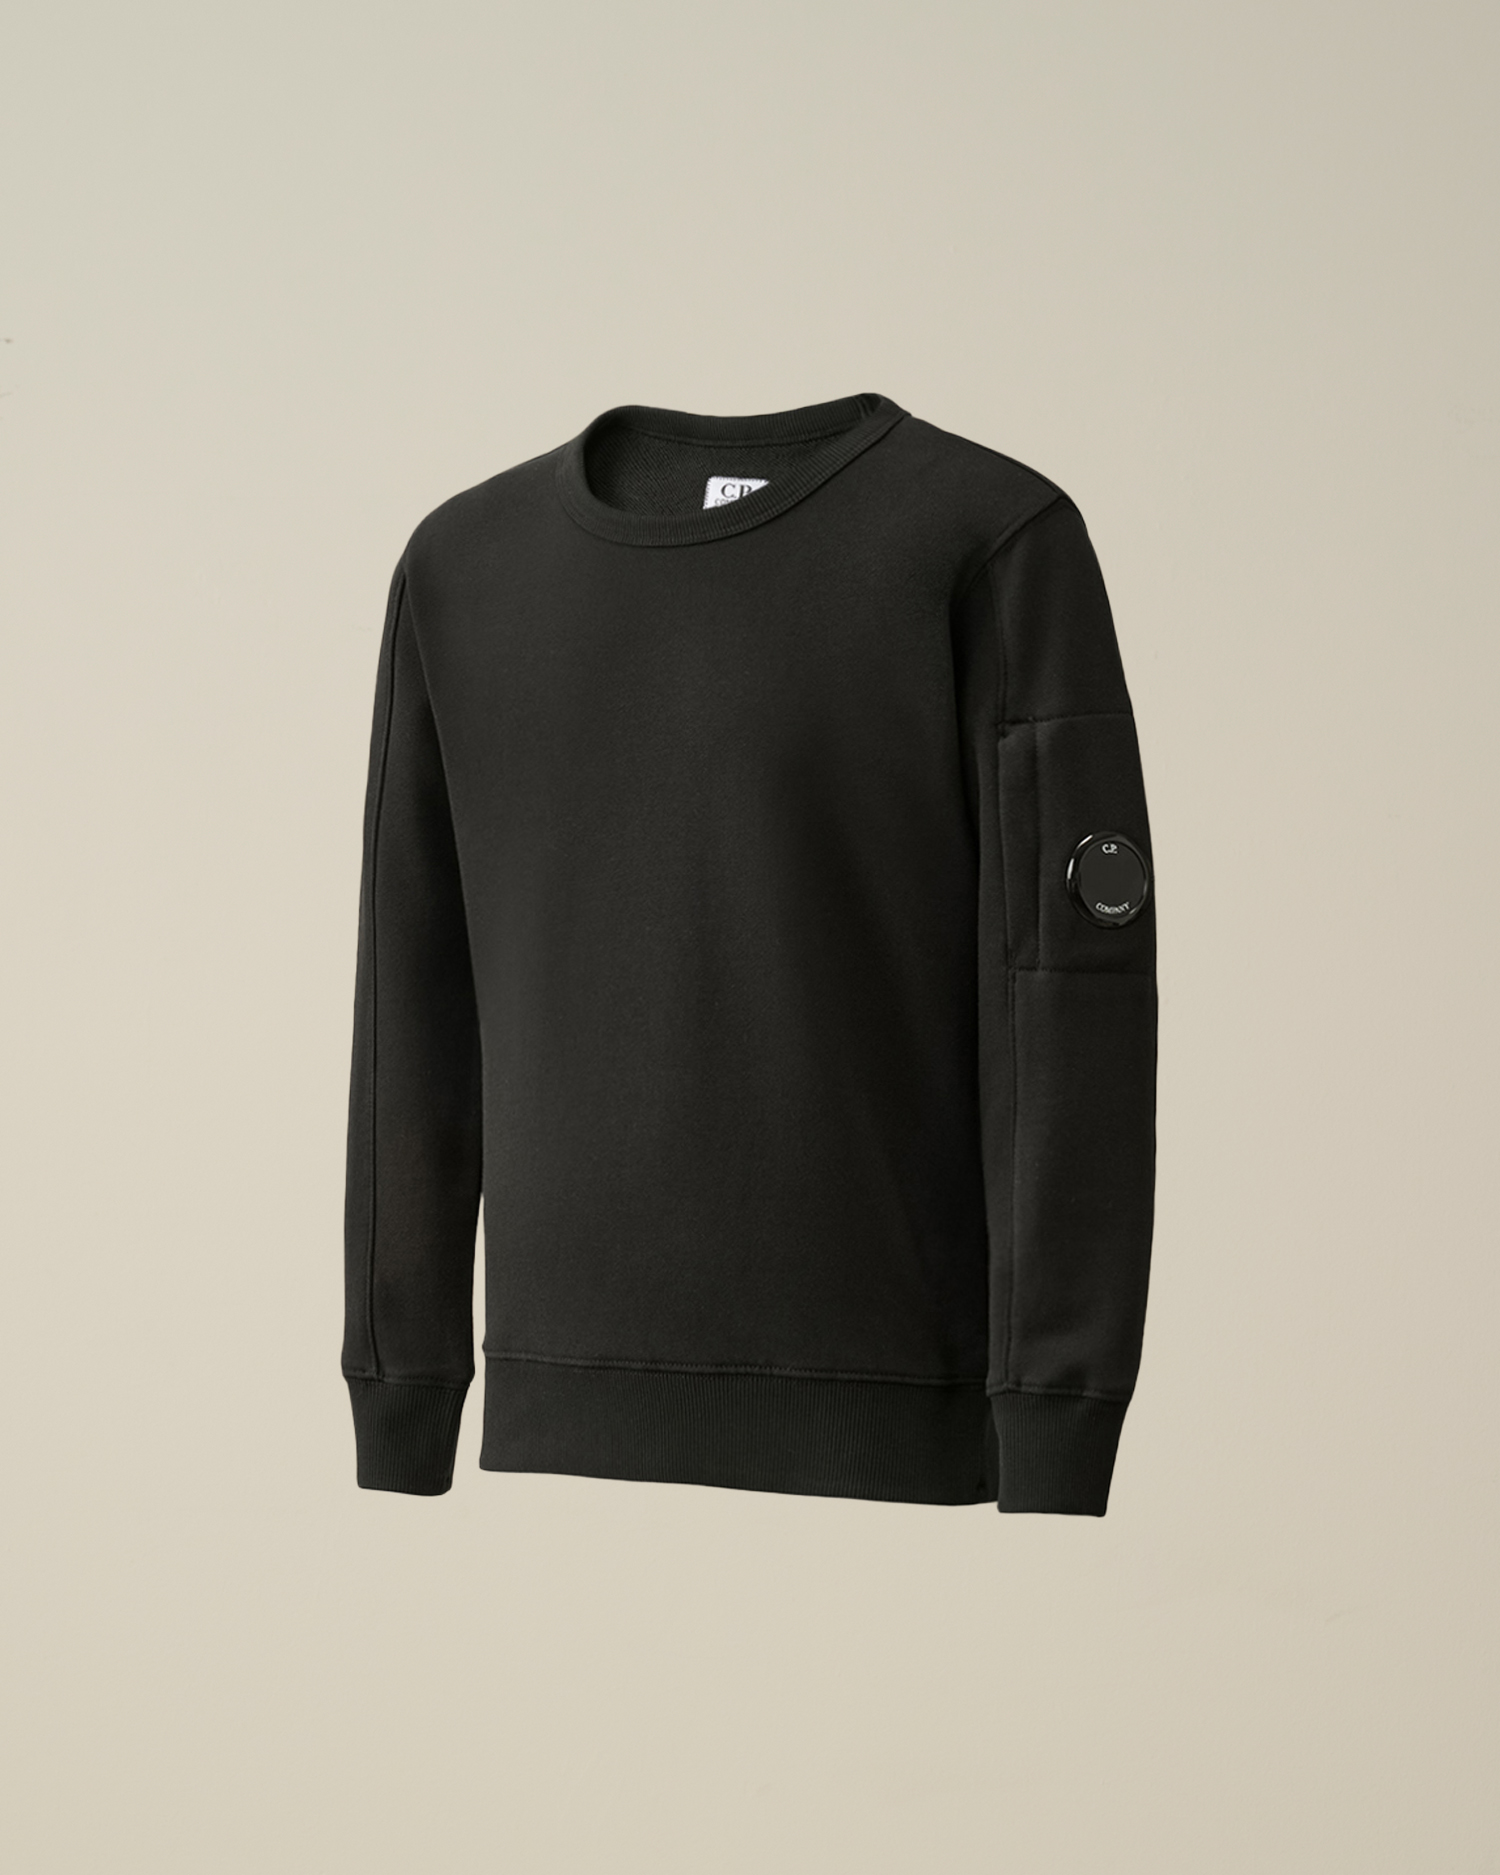 U16 Diagonal Fleece Lens Sweatshirt | C.P. Company Online Store